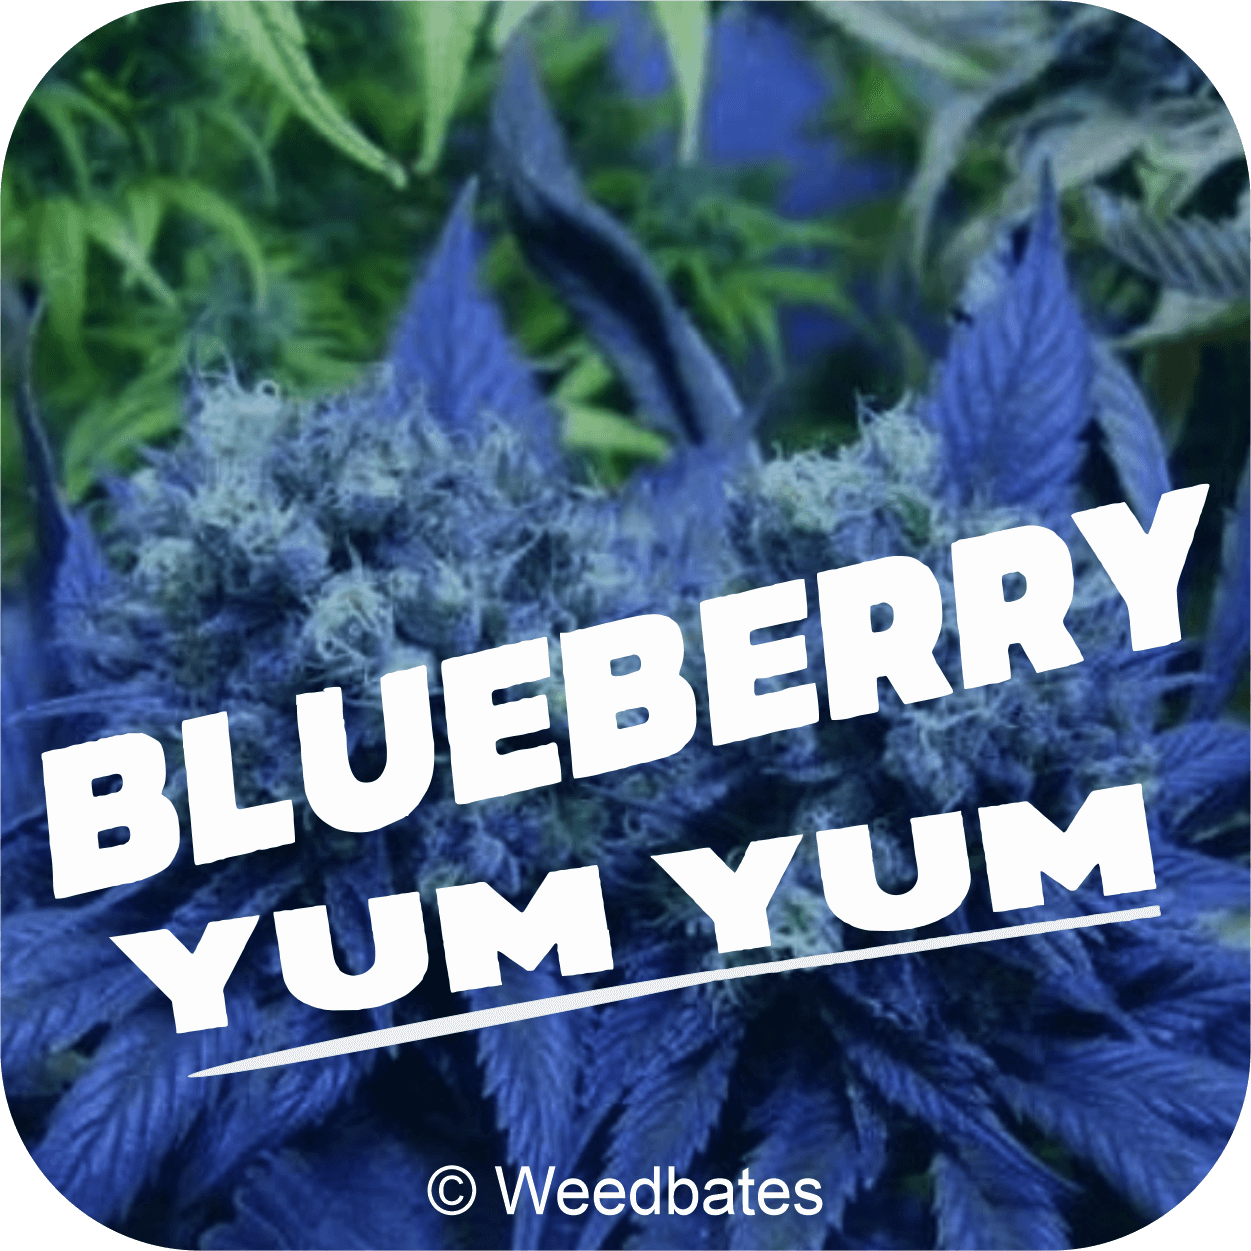 Blueberry Yum Yum cannabis strain